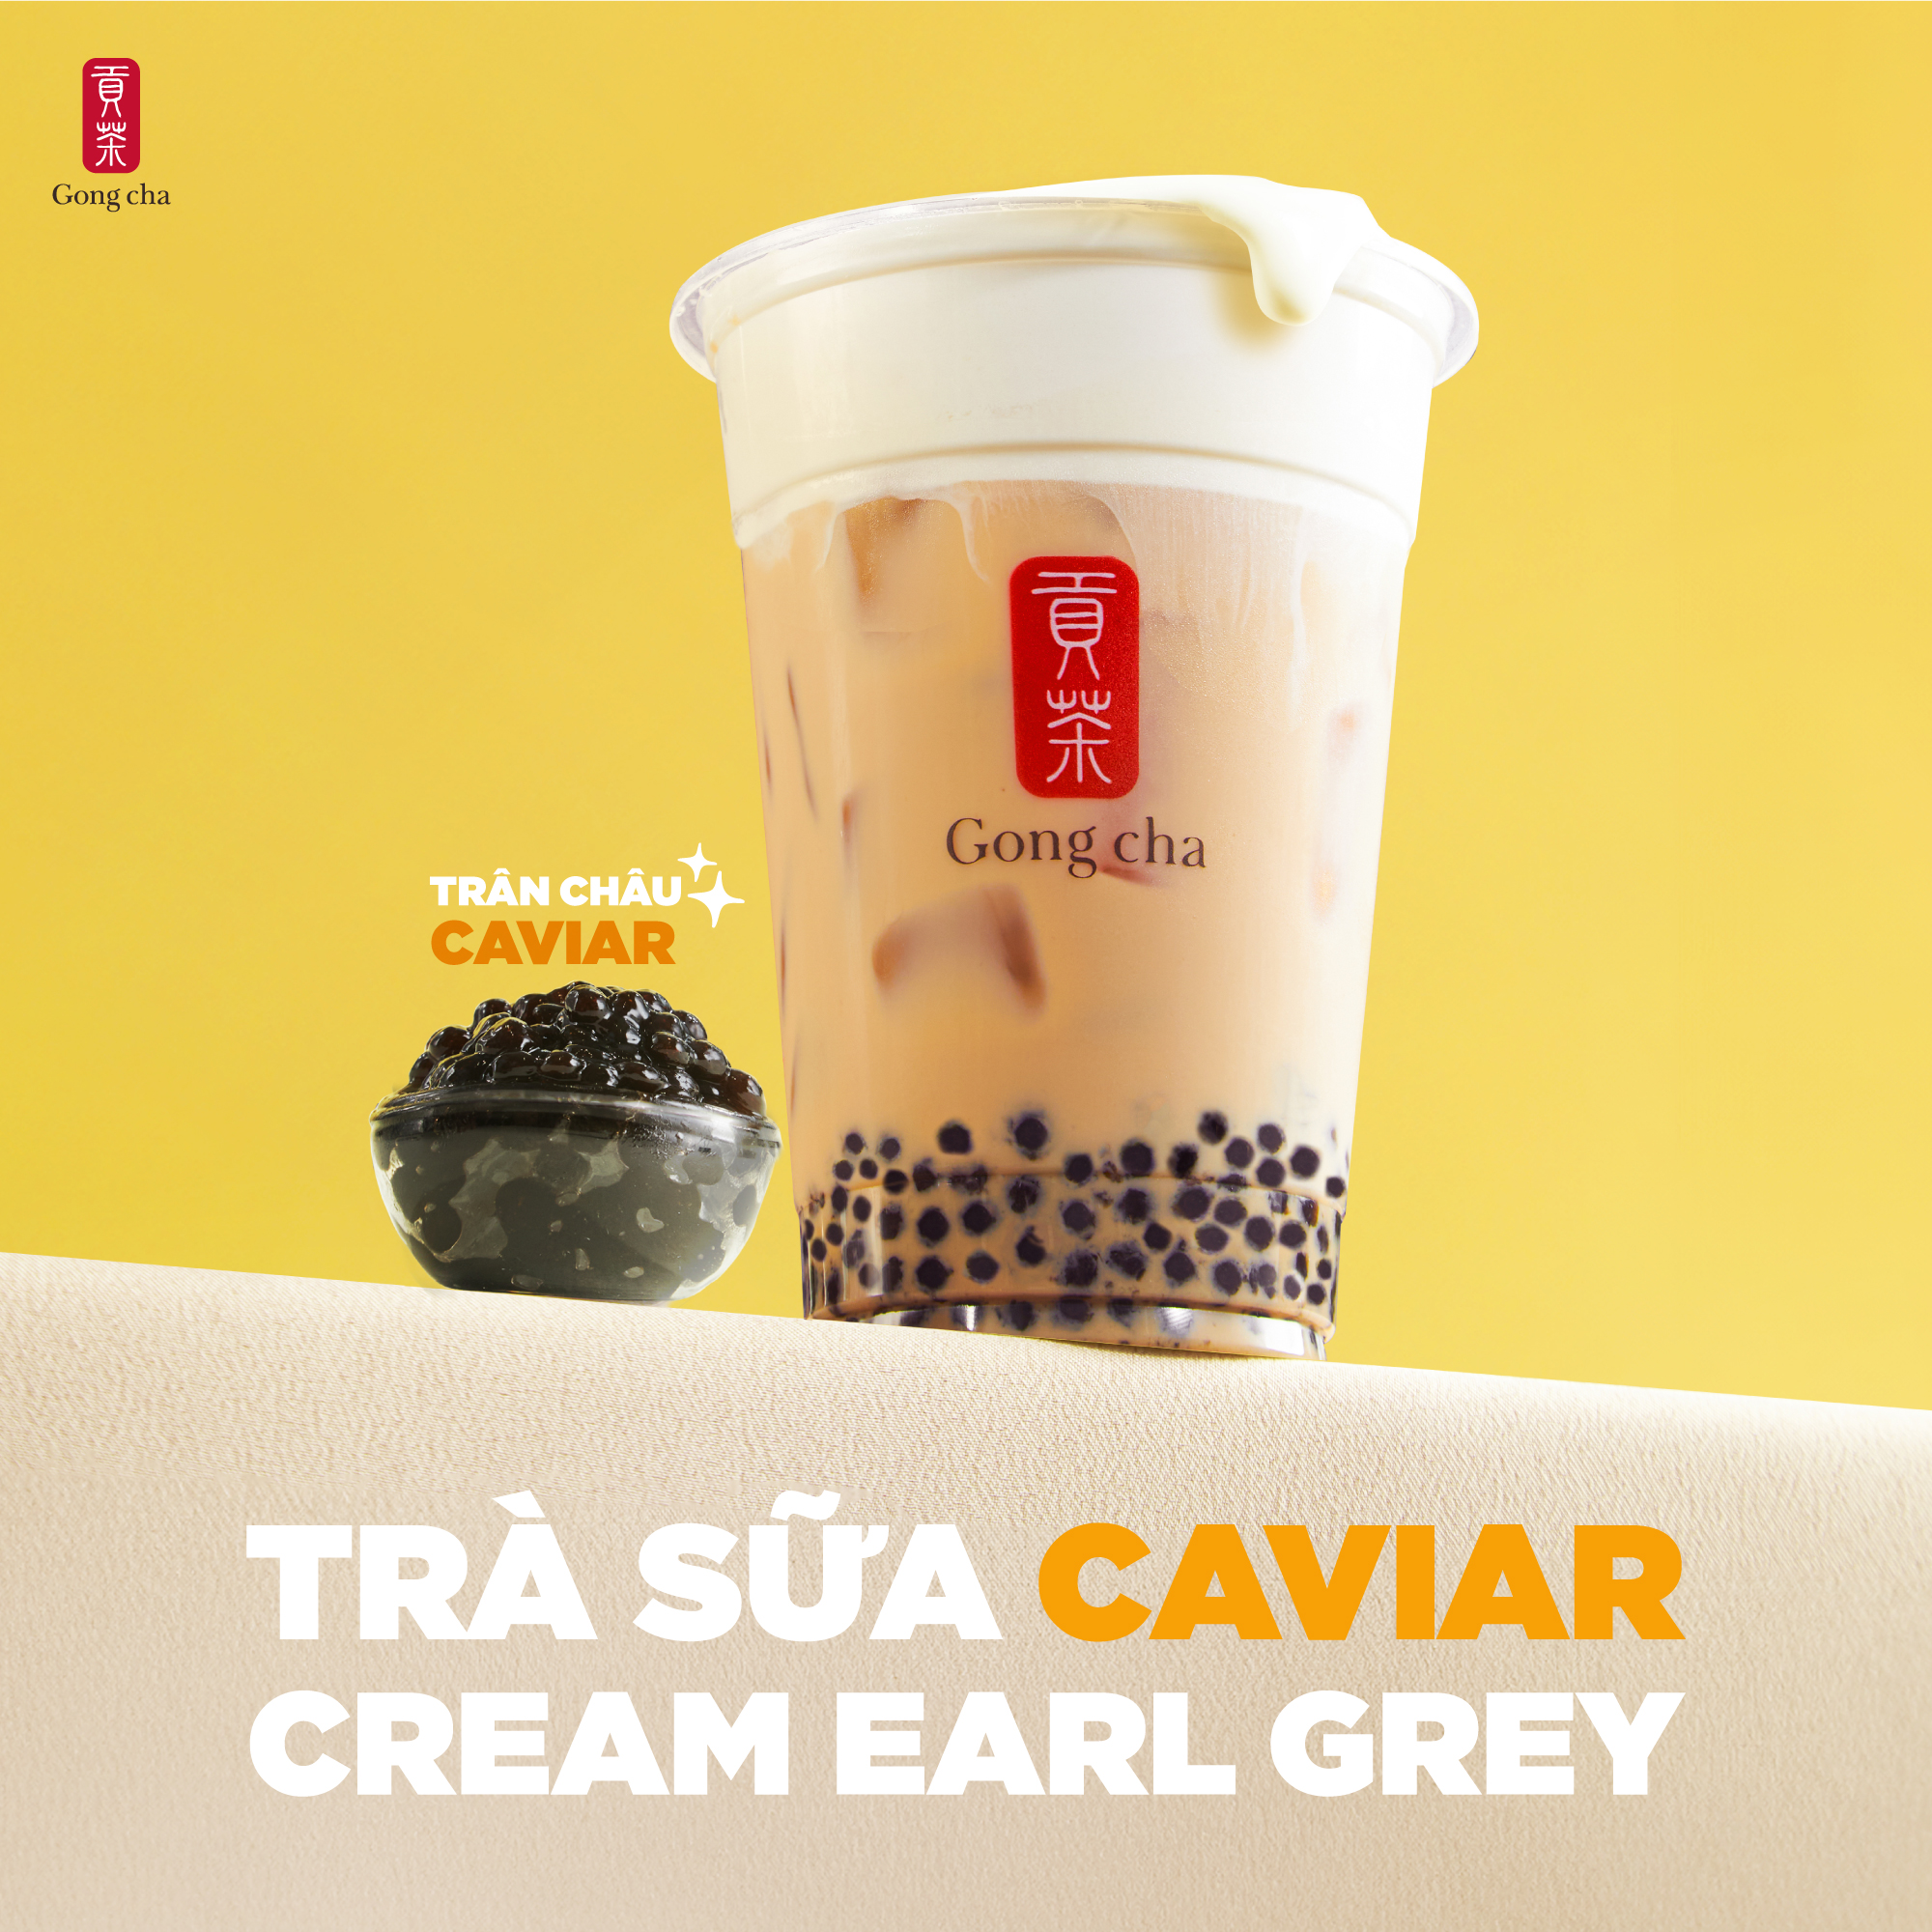 GONG CHA - LAUNCHING CAVIAR CREAM EARL GREY MILK TEA